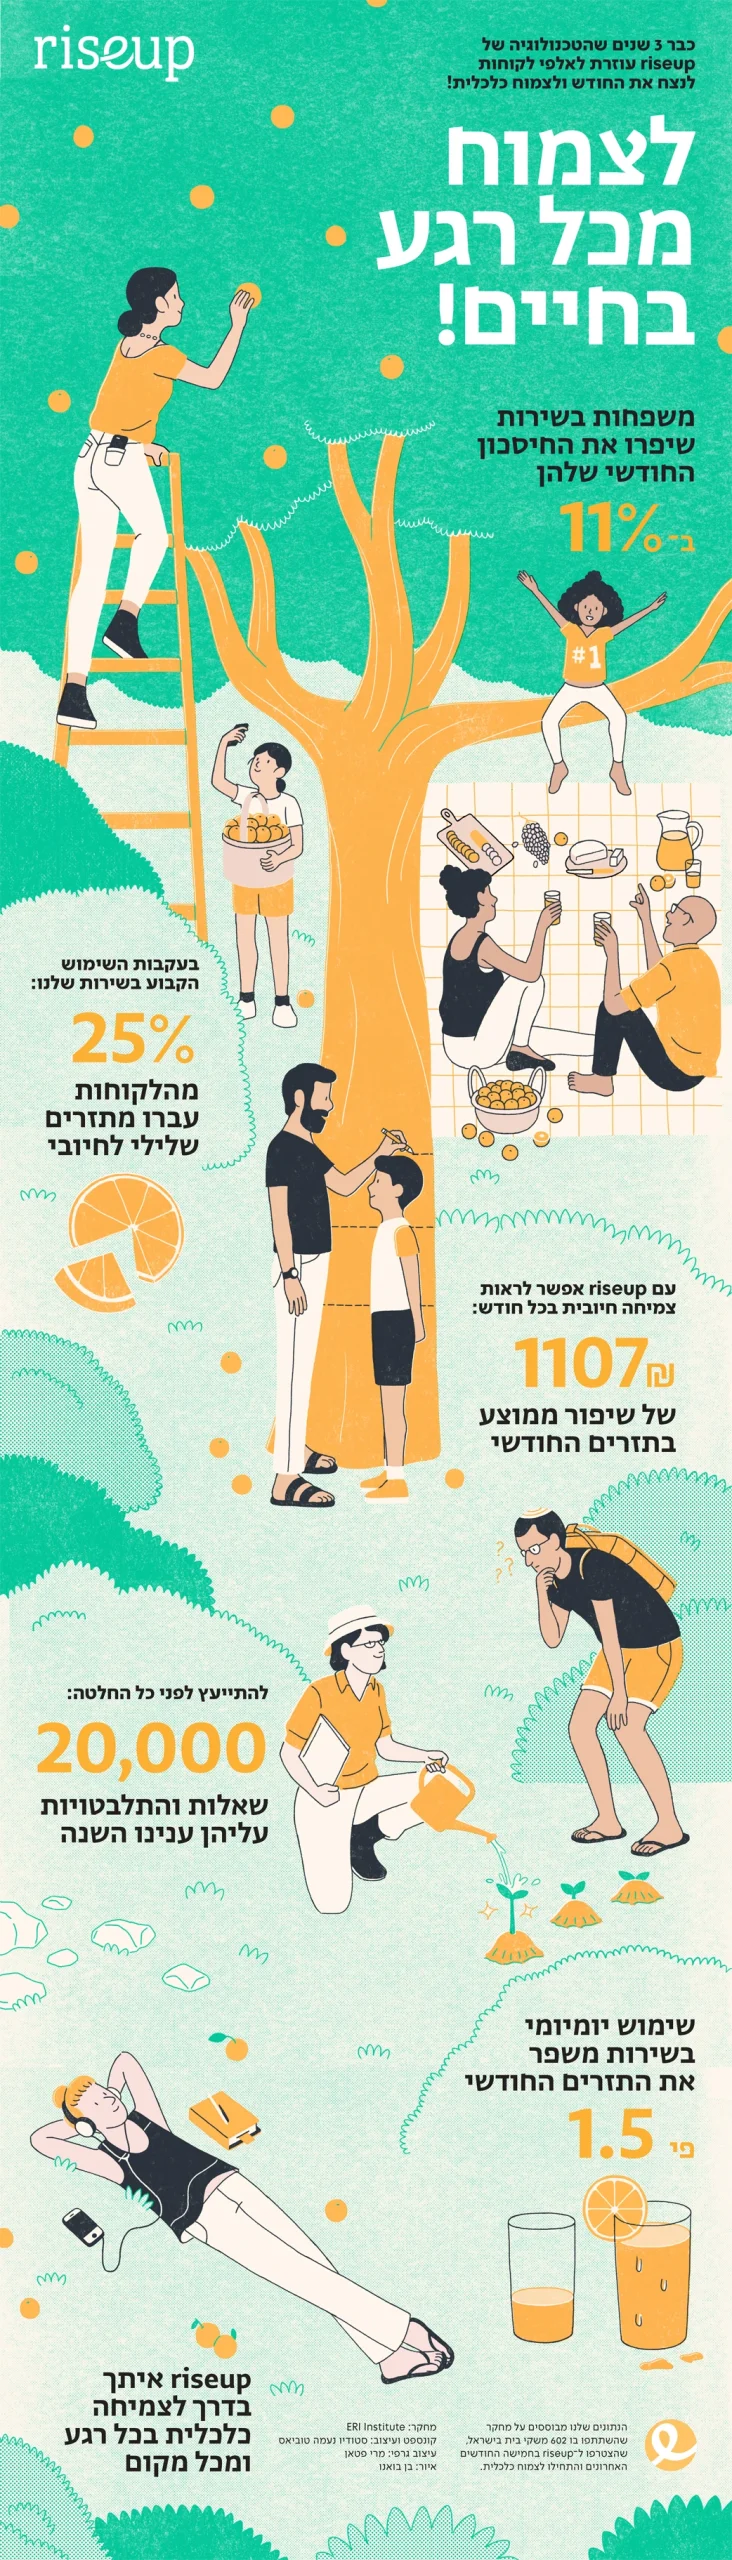 נתוני הצמיחה של לקוחות RiseUp על פי מחקר שבדק 602 משקי בית ישראלים